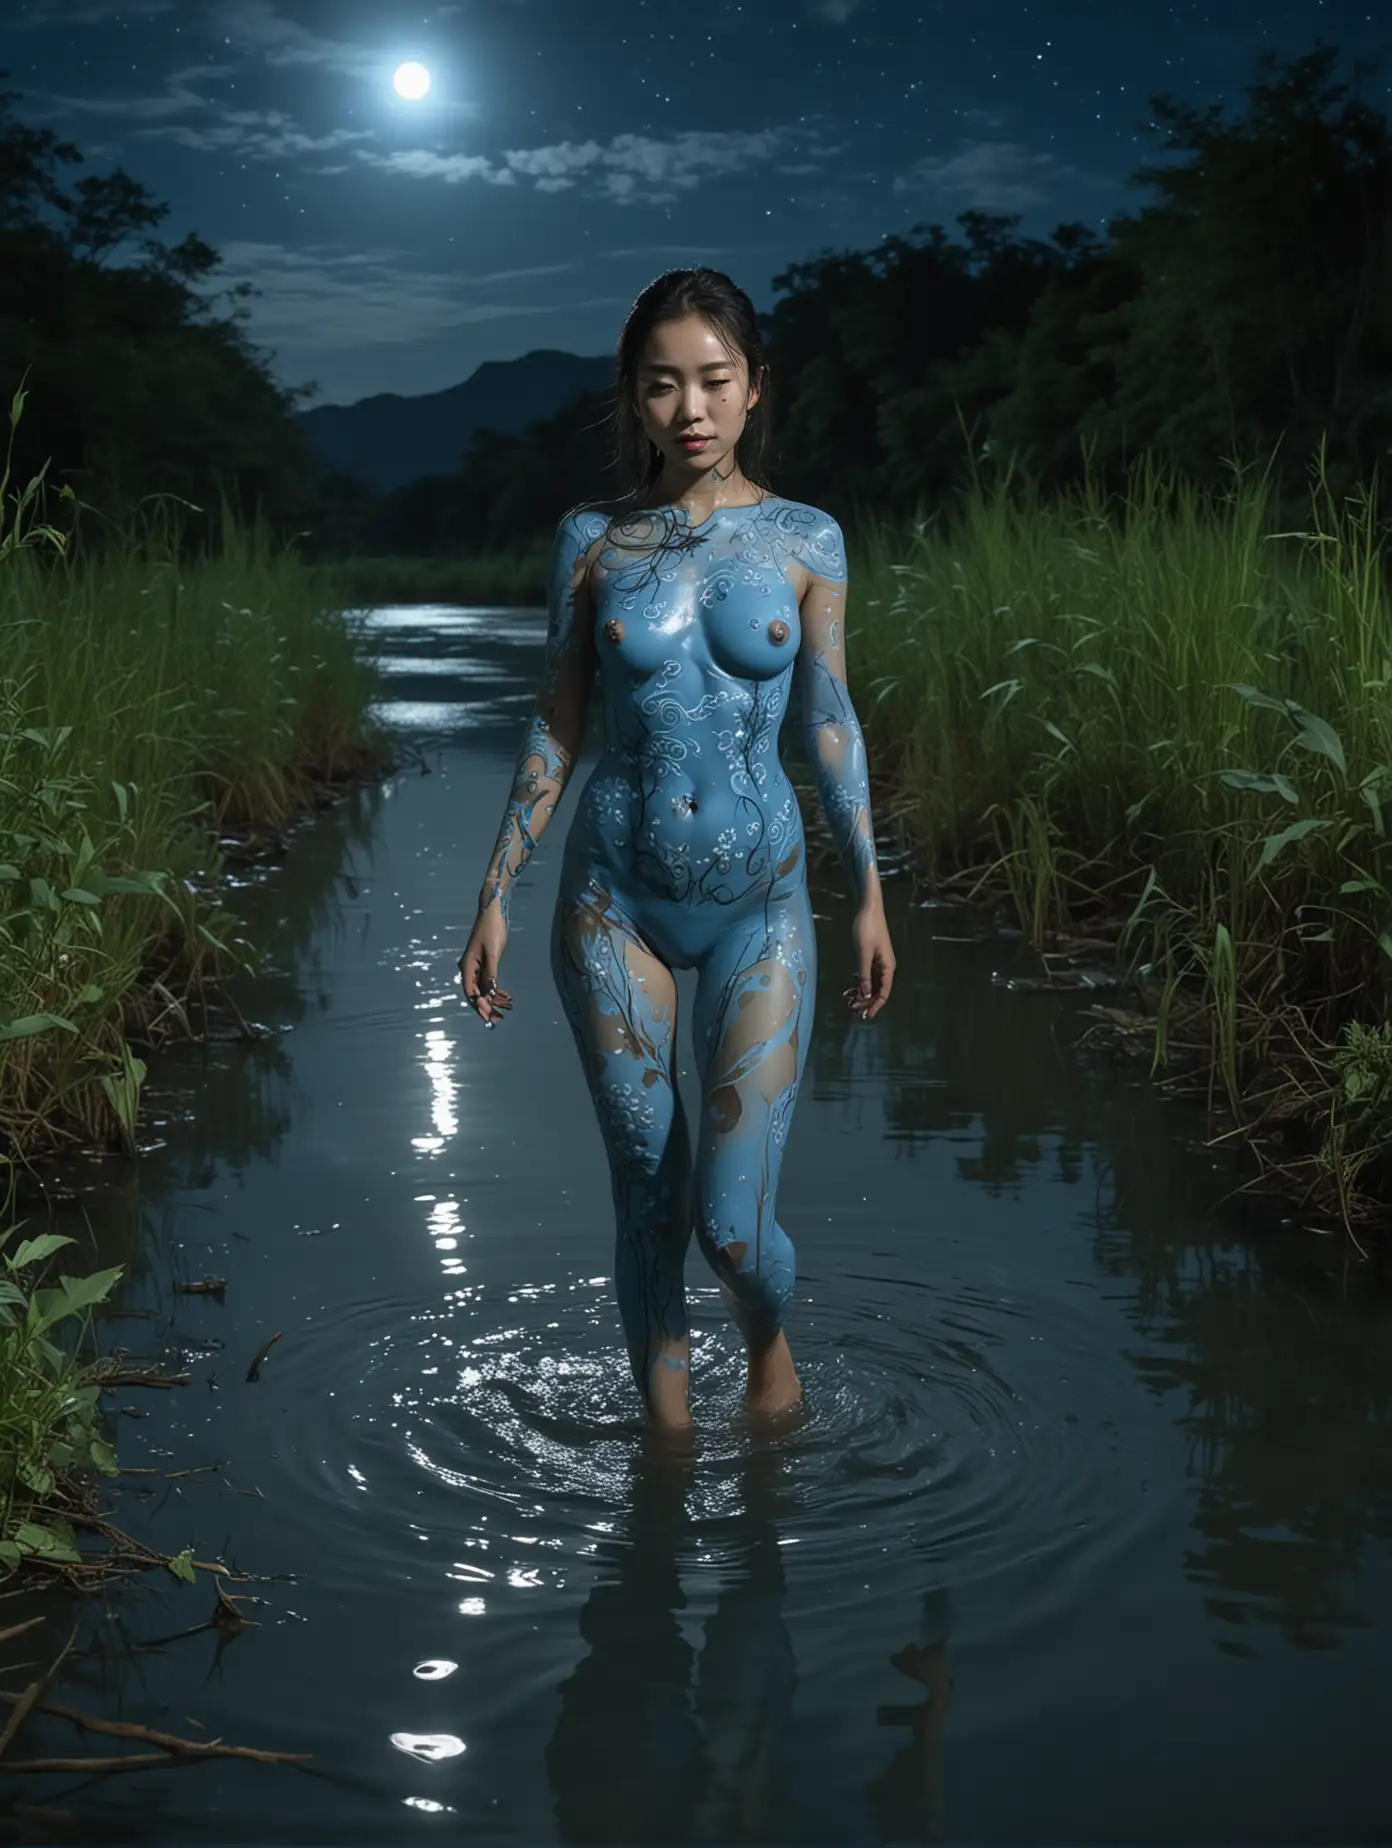 Cuerpo completo. Mujer asiatica, bodypaint color azul cielo.  Camina con las piernas sumergidas hasta las pantorrillas en un río. Es de noche. La luna se ve al f0ndo. Vegetación en el costado derecho